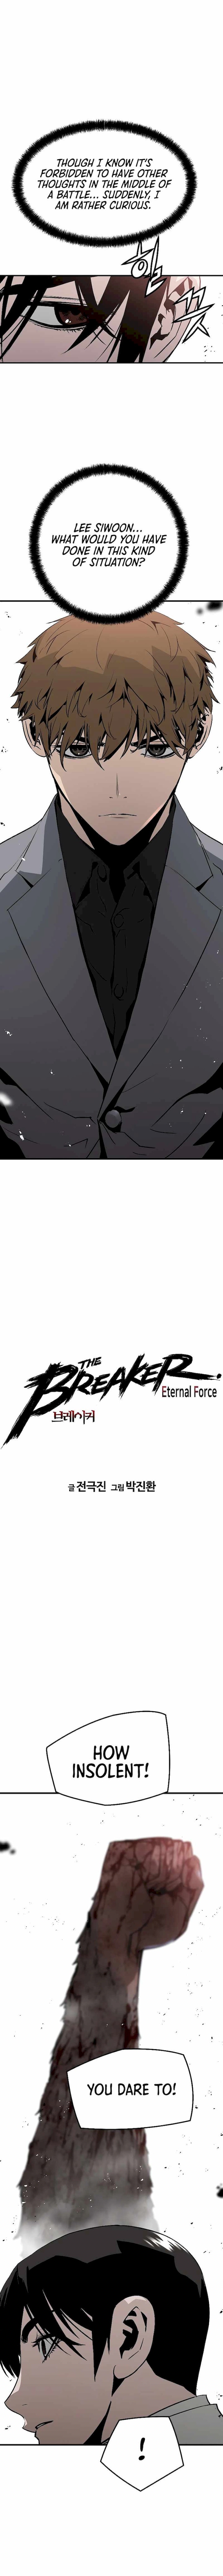 The Breaker 3 Eternal Force 46 1